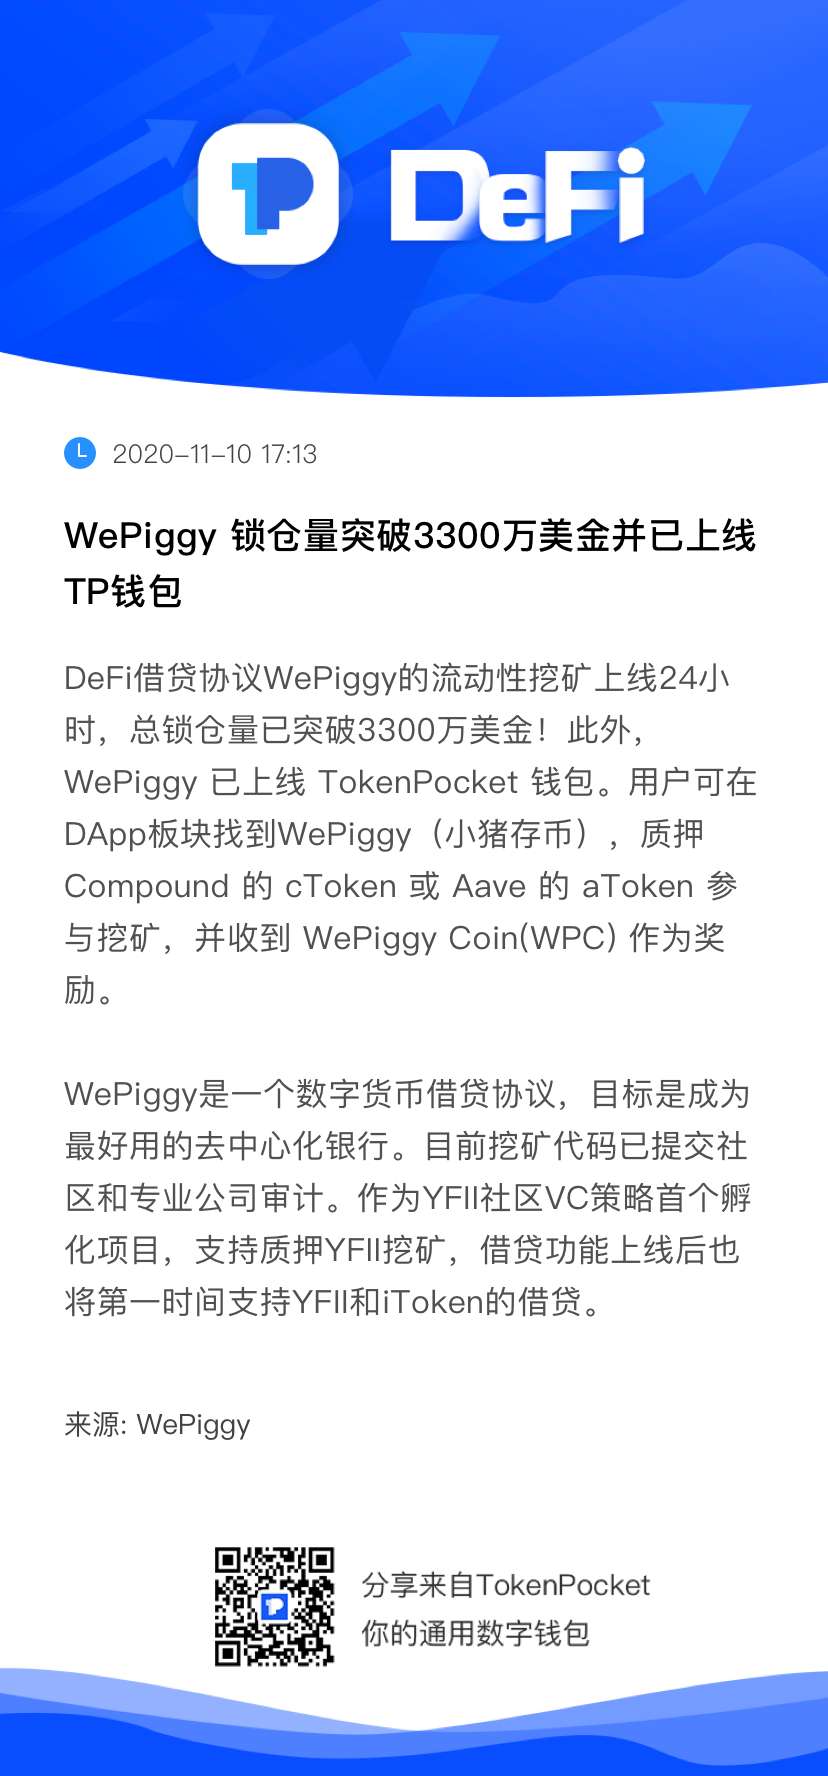 WePiggy协议锁仓量已冲破3700万美金